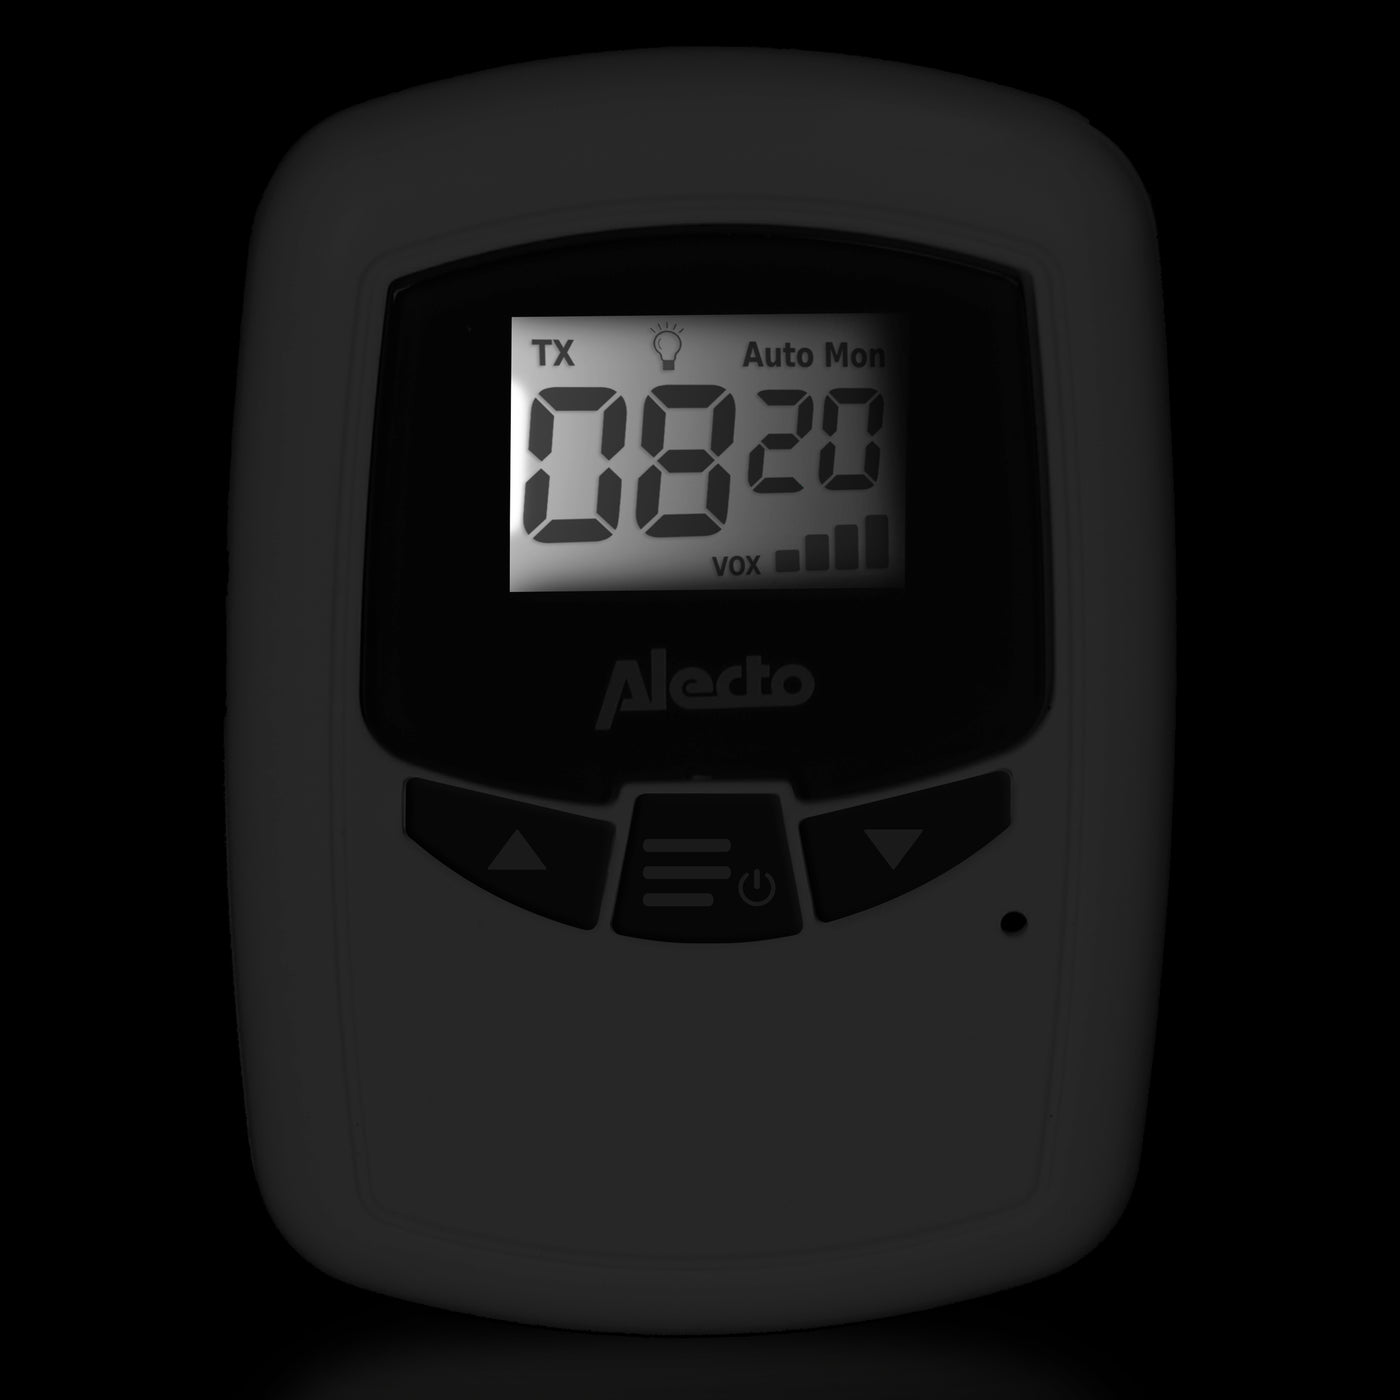 Alecto DBX-80BU - Zusätzliches Babyeinheit für DBX-80, weiß/anthrazit